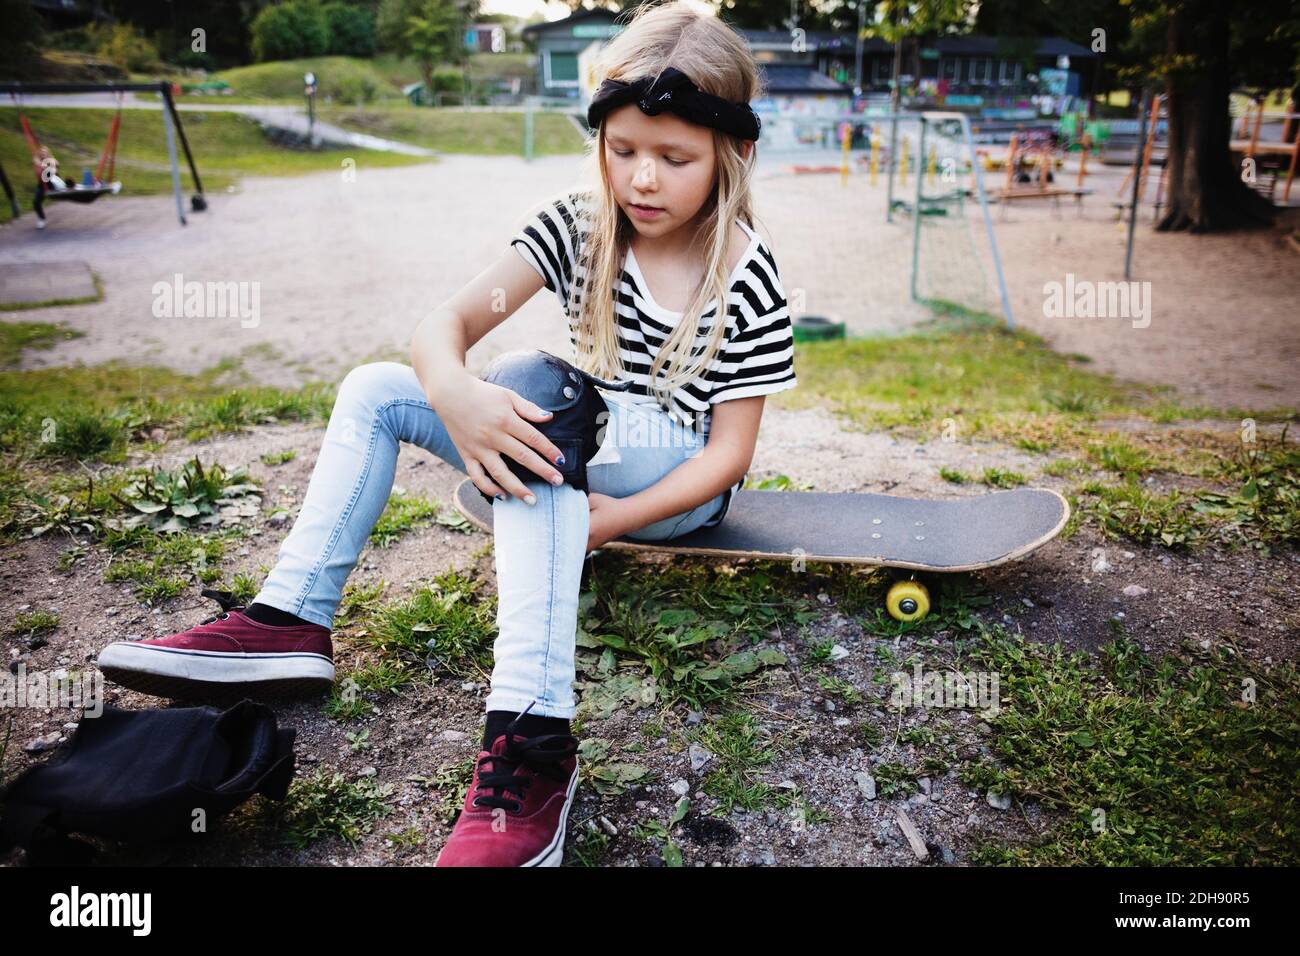 Mädchen binden kniepad während sitzen auf Skateboard im Park Stockfoto